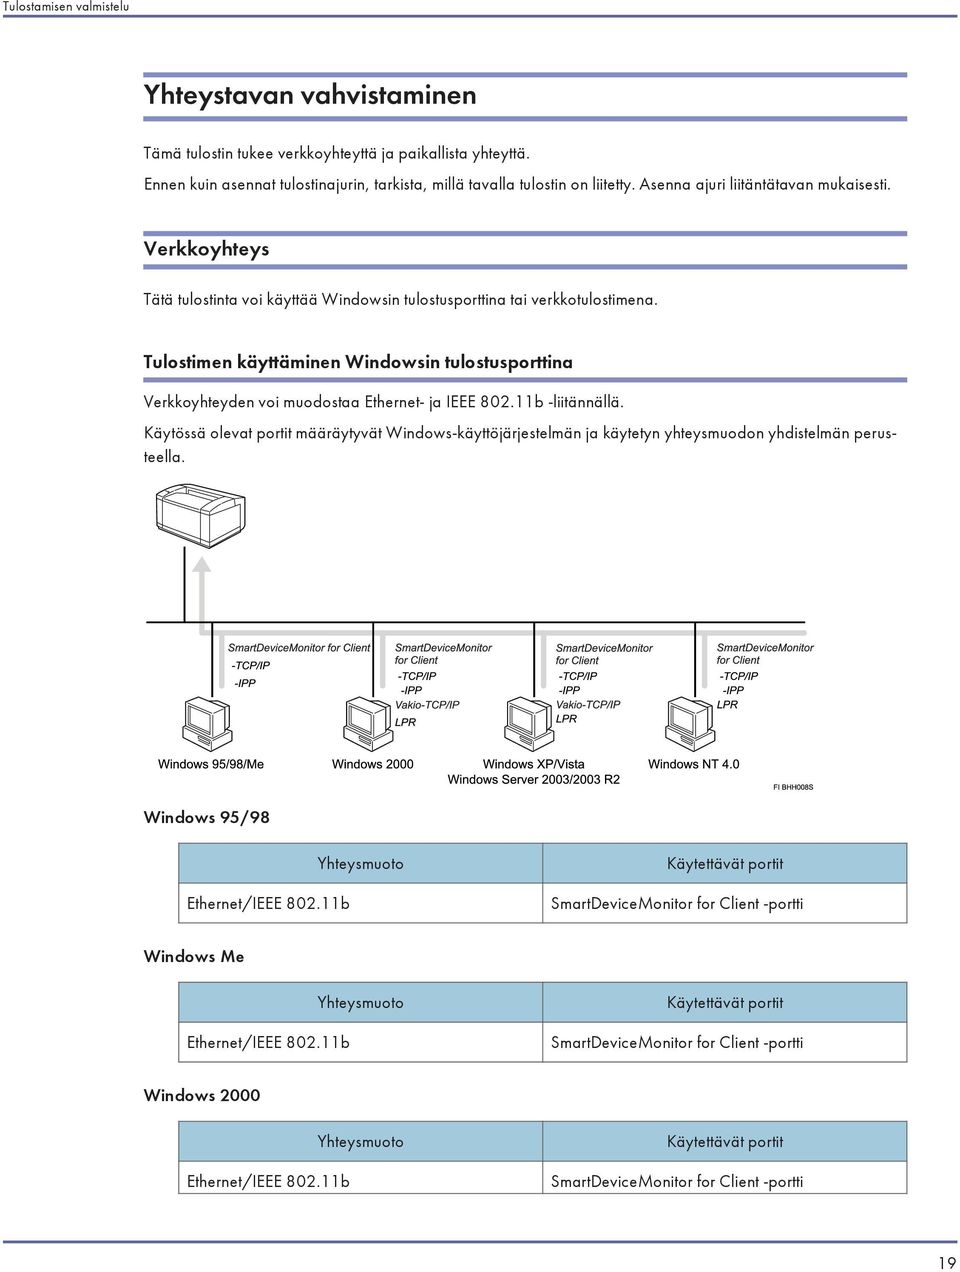 Tulostimen käyttäminen Windowsin tulostusporttina Verkkoyhteyden voi muodostaa Ethernet- ja IEEE 802.11b -liitännällä.